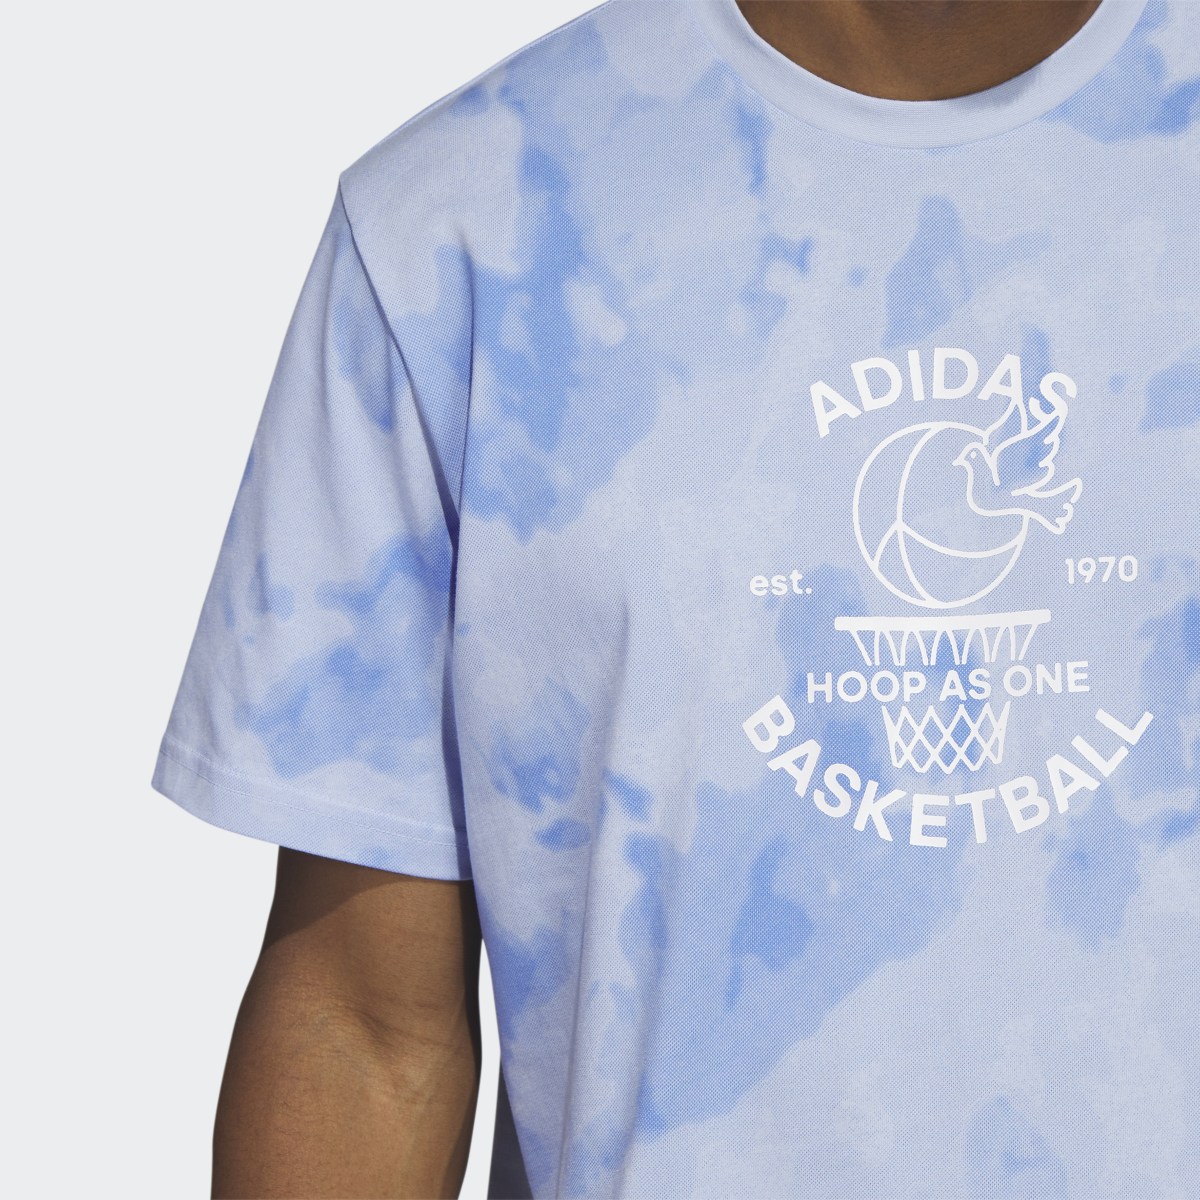 Adidas Camiseta Worldwide Hoops Basketball Graphic. 6